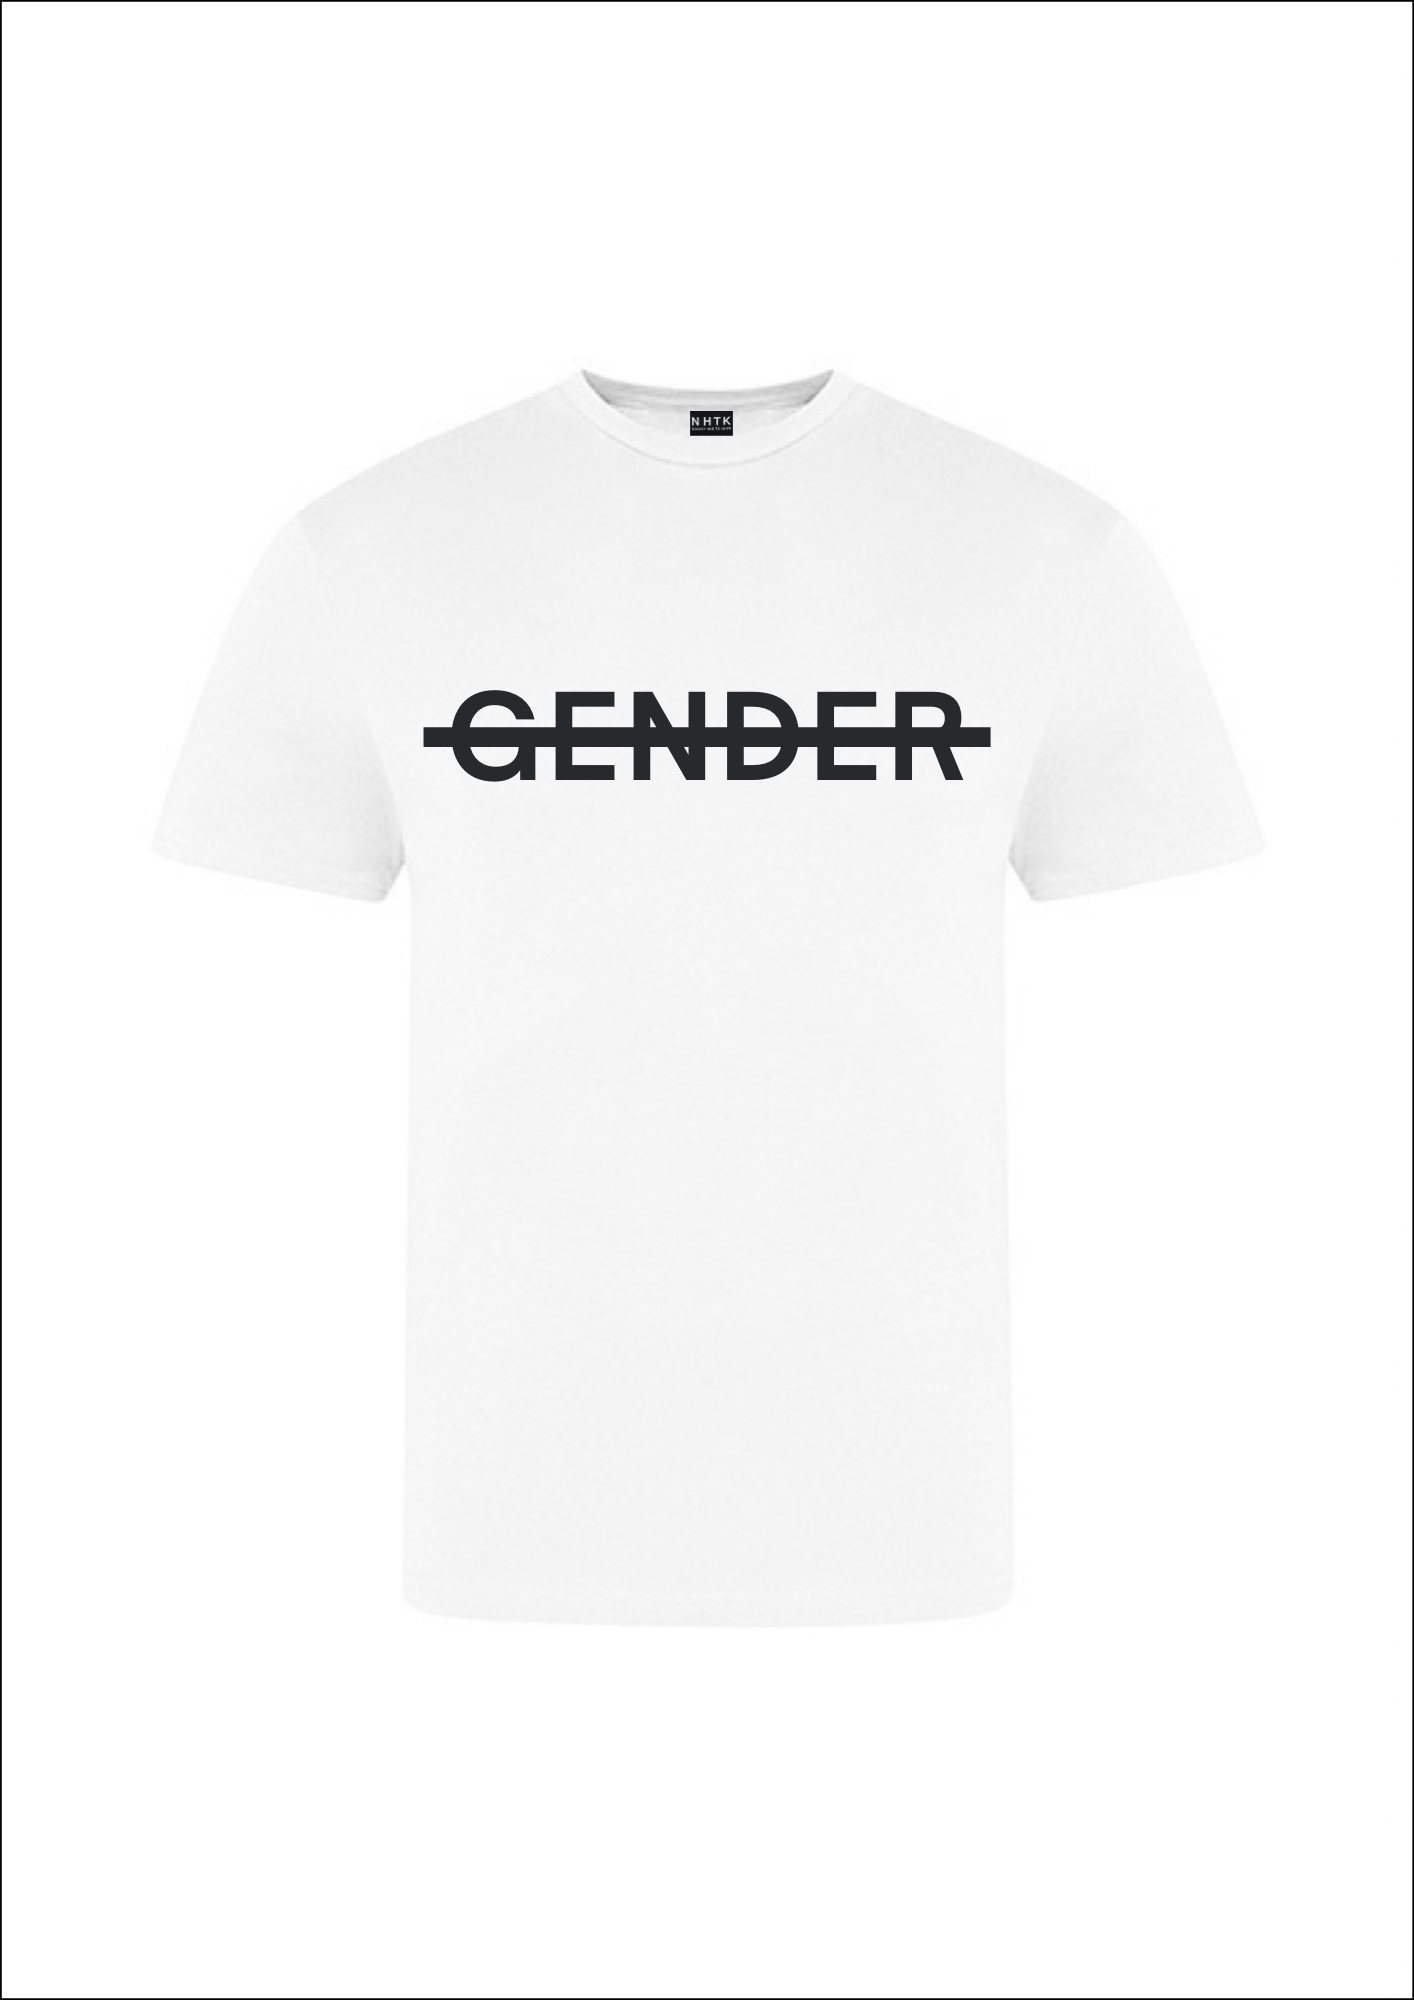 No gender t-shirt - tie dye